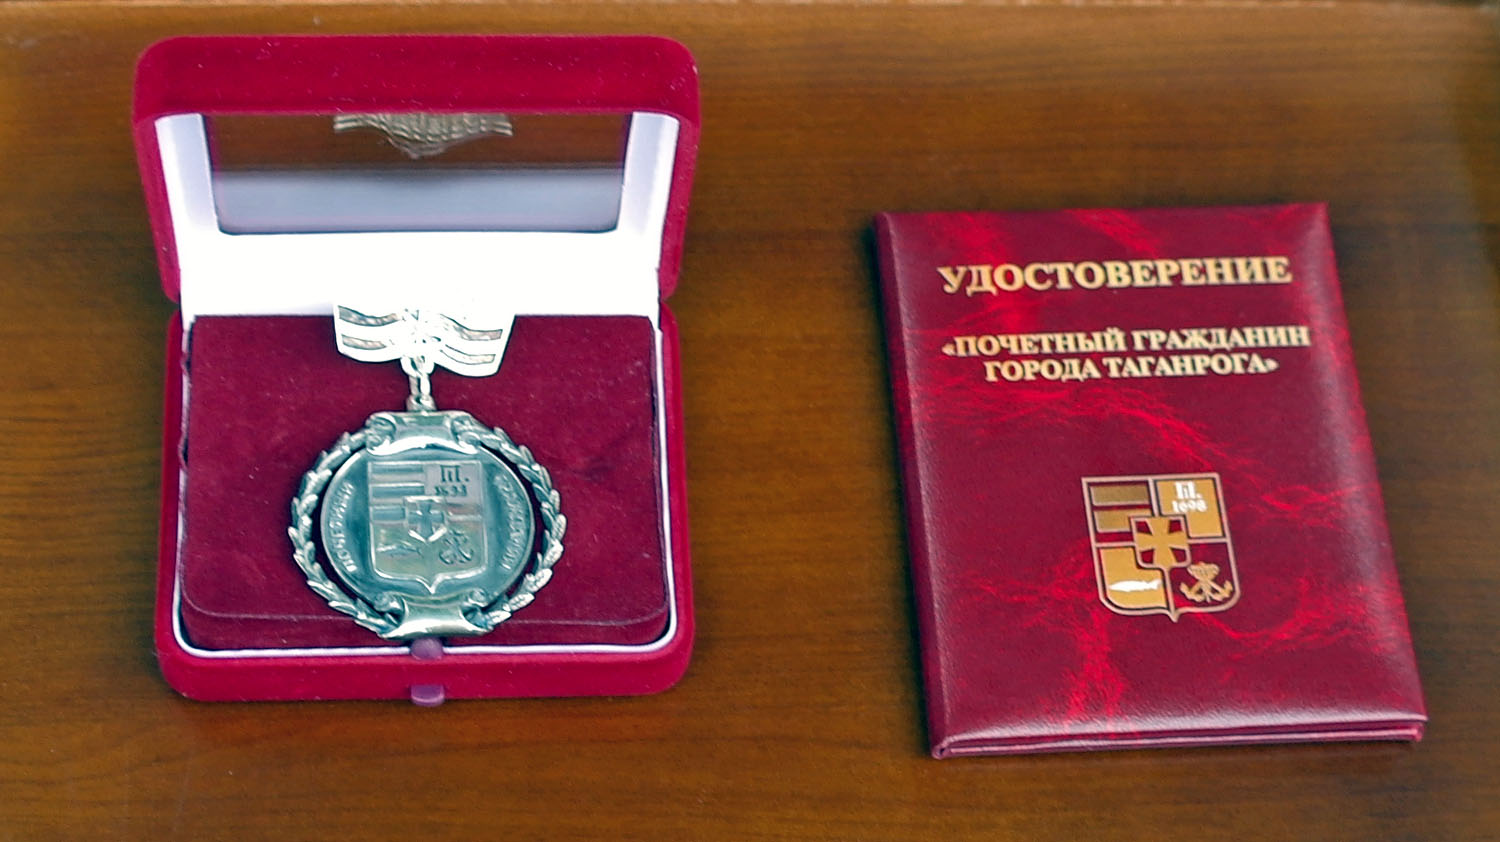 Продолжается прием документов на присвоение звания «Почетный гражданин города Таганрога»